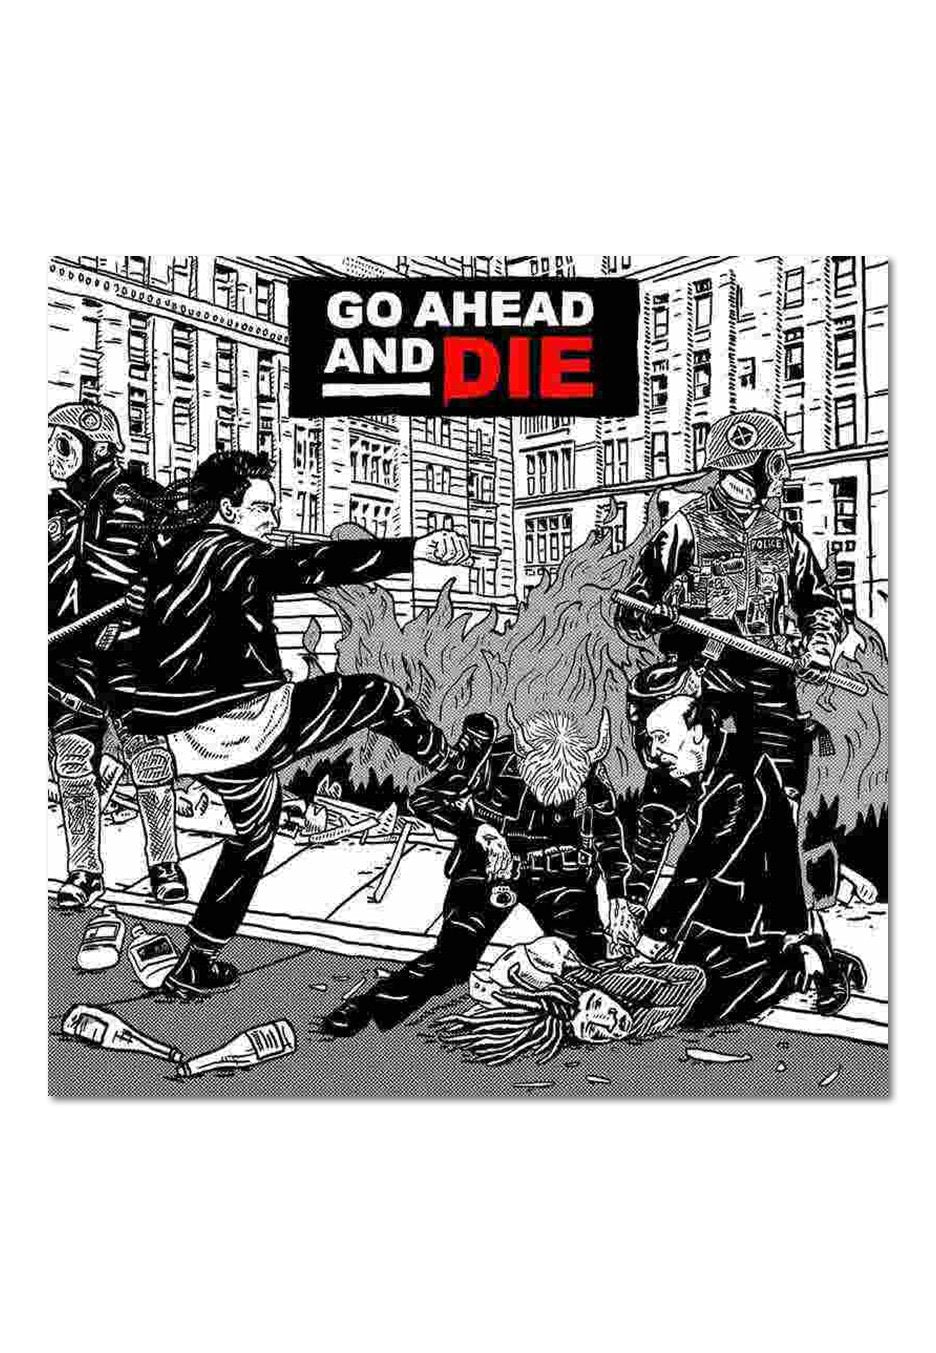 Go Ahead And Die - Go Ahead And Die - CD